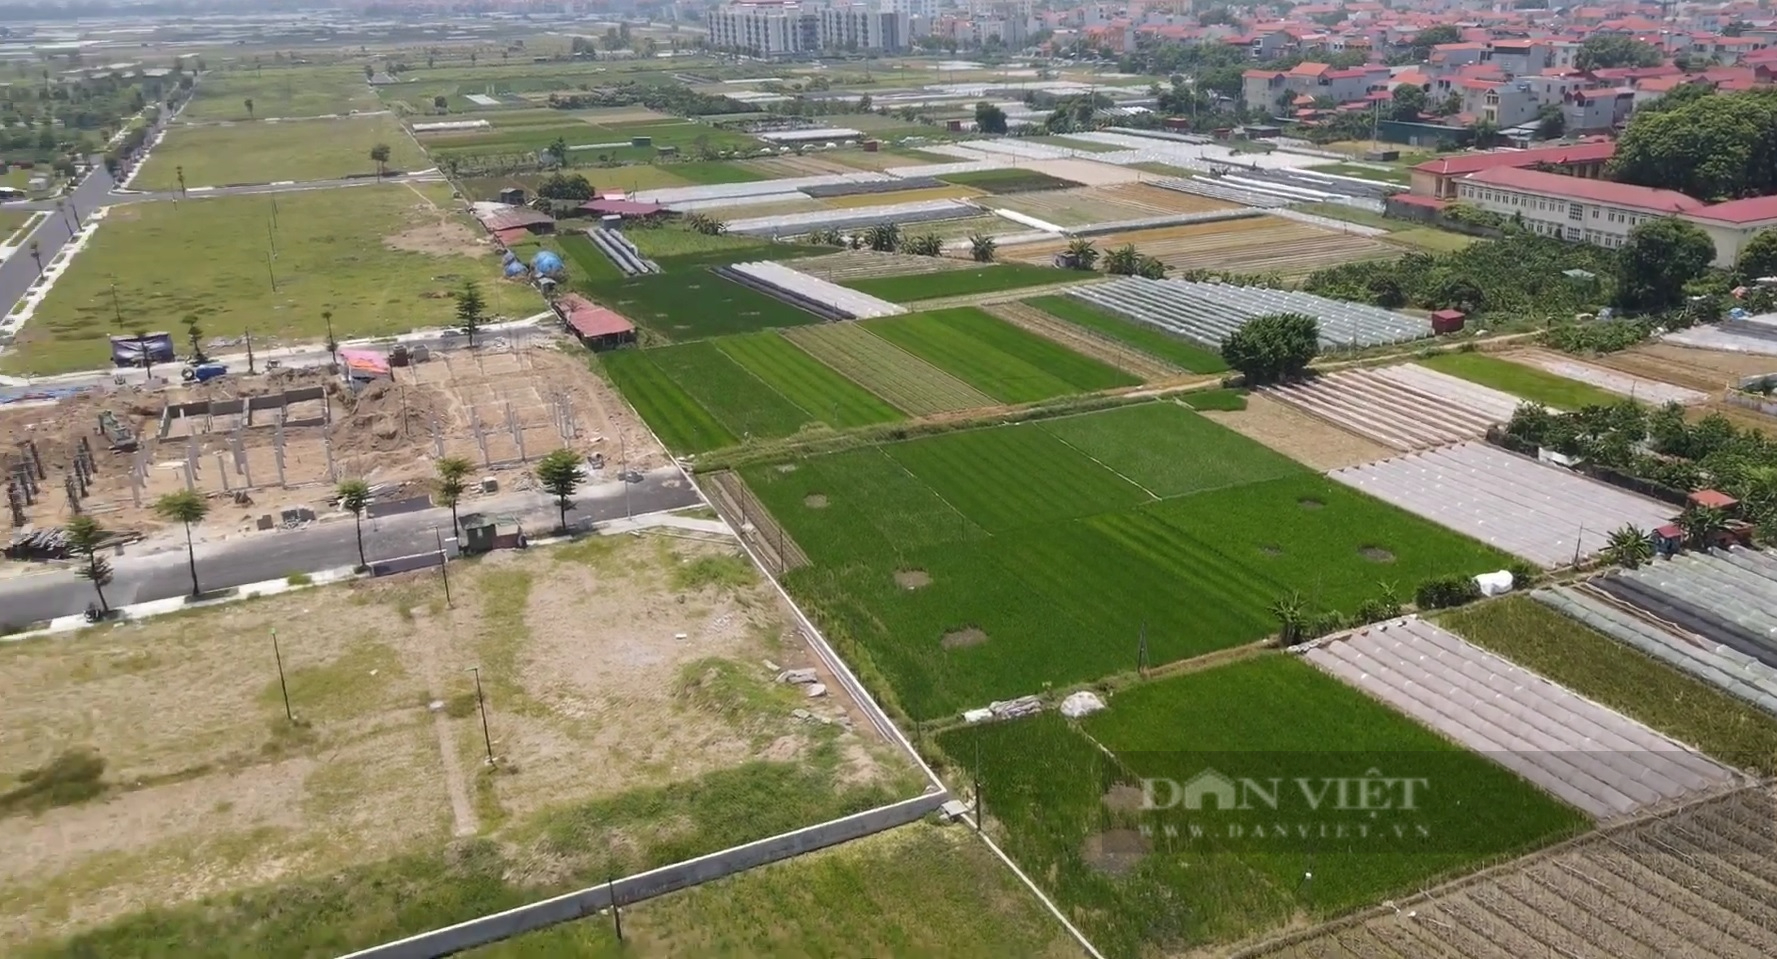 Hà Nội: Mức giá đền bù đất nông nghiệp cao nhất chỉ hơn 1,5 triệu đồng/m2 - Ảnh 1.